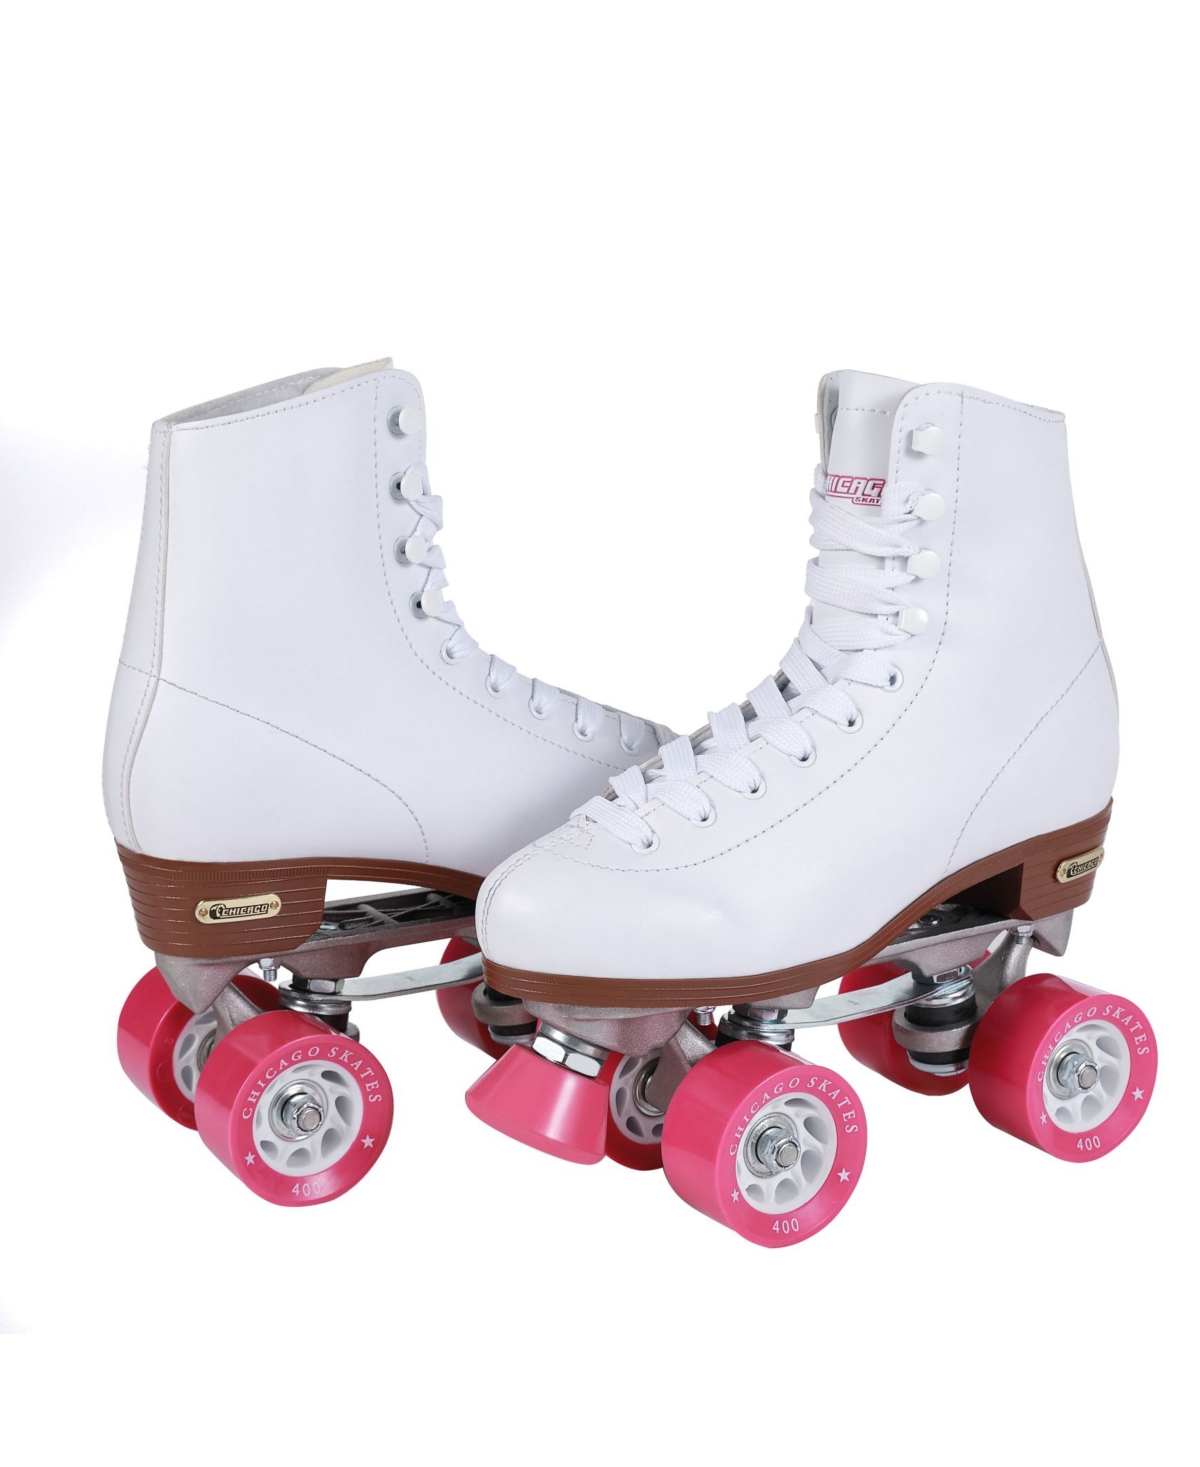 Women's Rink Roller Skates - Size 10 - White